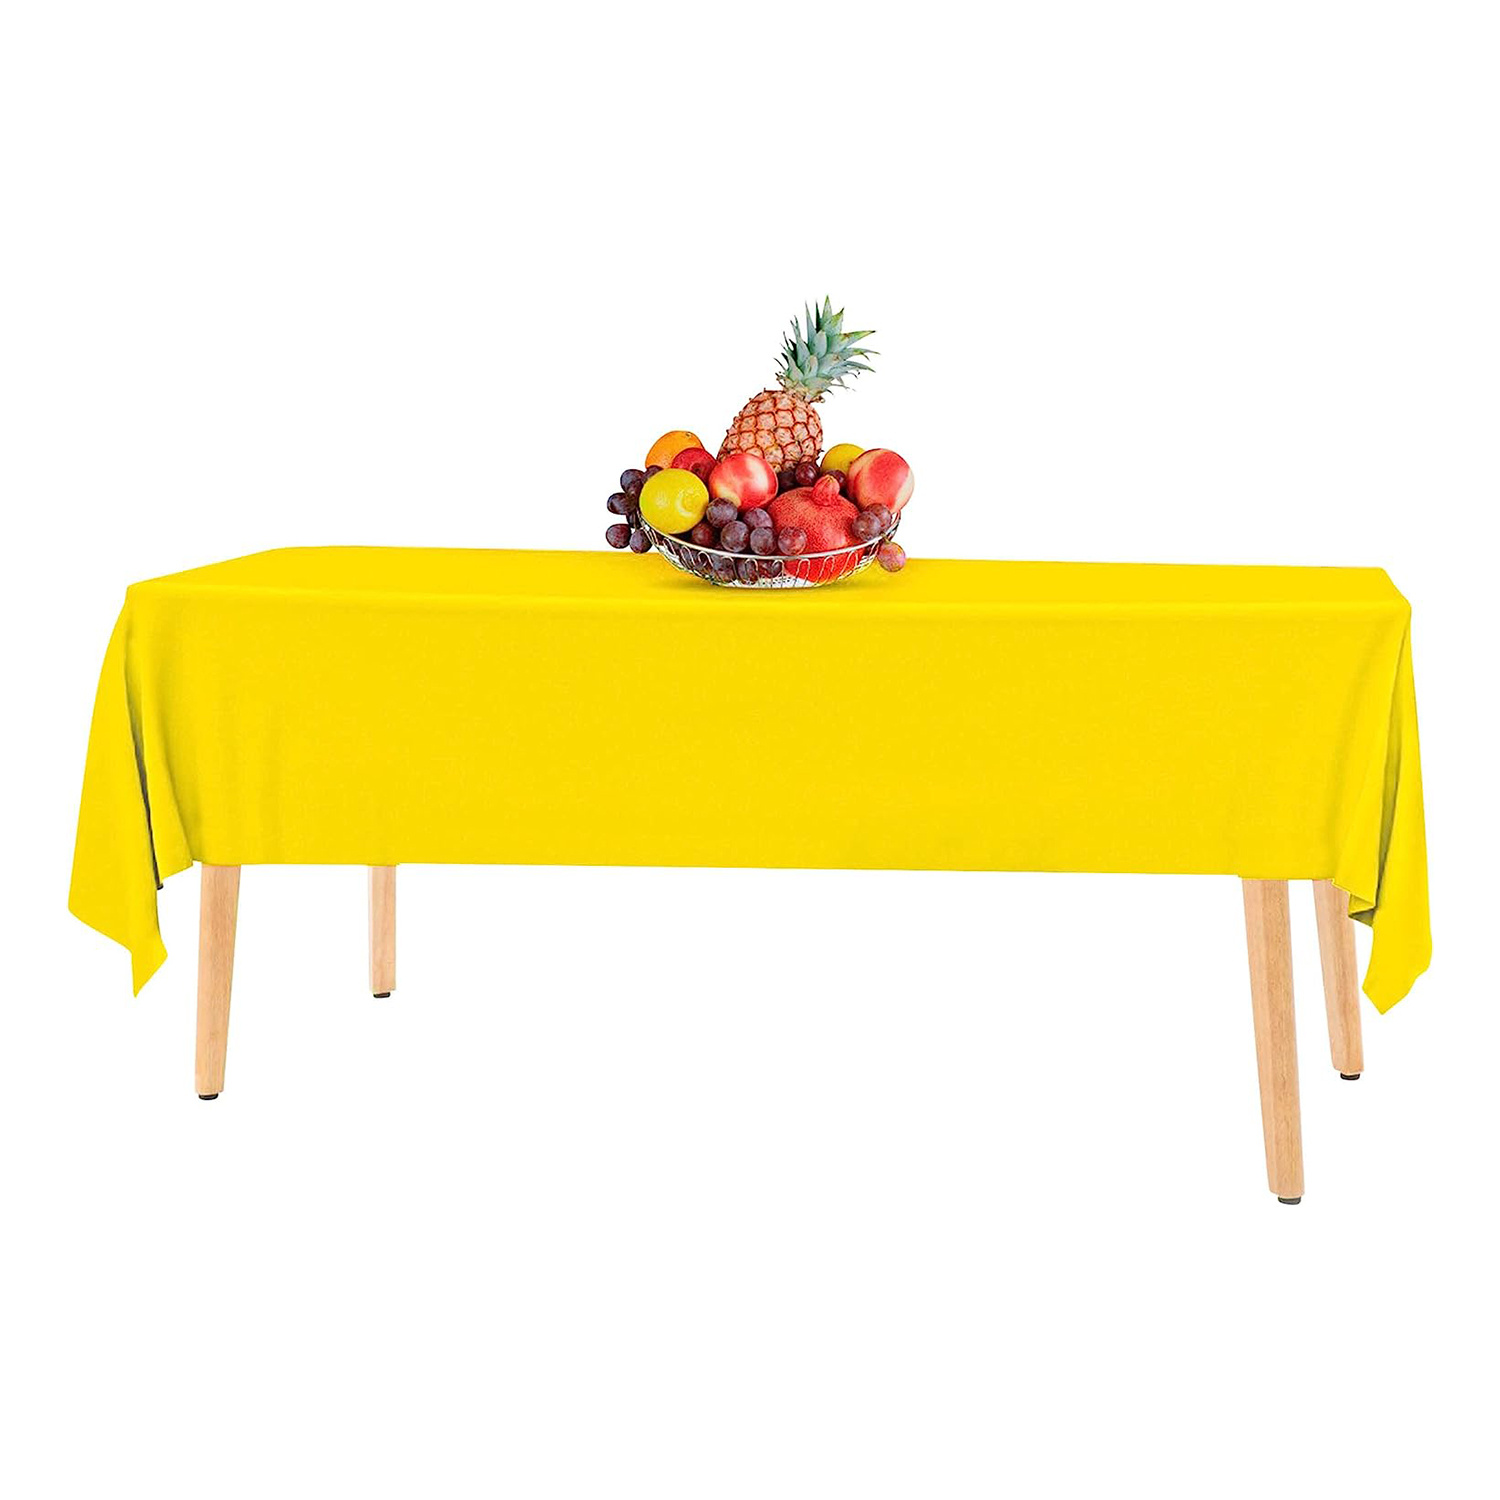 Mantel de plástico naranja para mesas rectangulares (paquete de 12)  manteles de plástico de alta calidad para fiestas, desechables para eventos  y